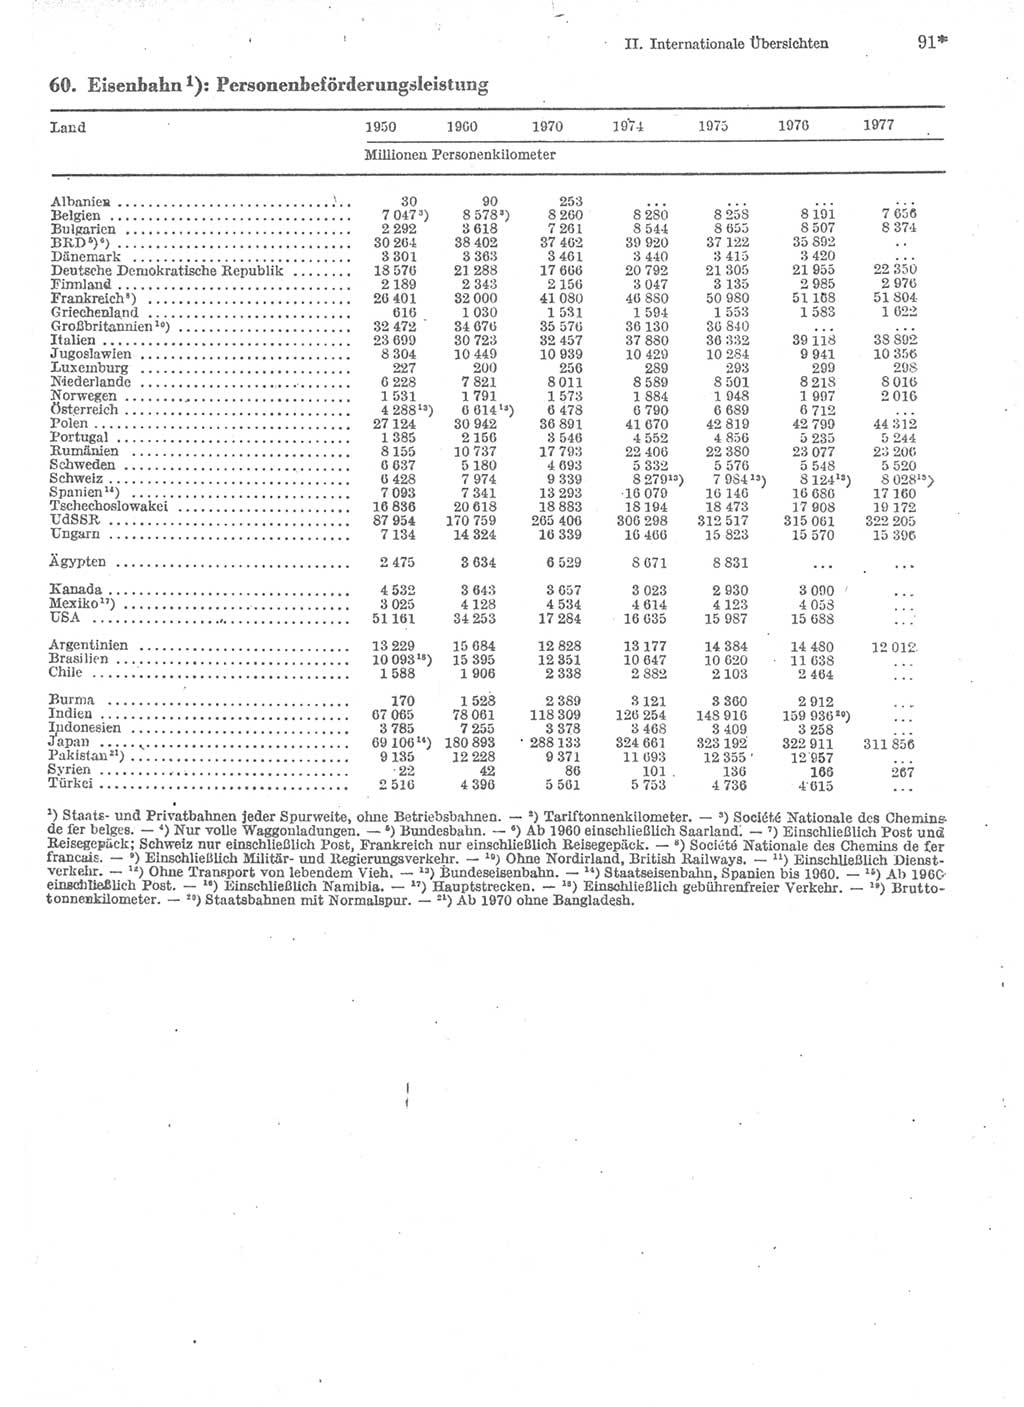 Statistisches Jahrbuch der Deutschen Demokratischen Republik (DDR) 1979, Seite 91 (Stat. Jb. DDR 1979, S. 91)